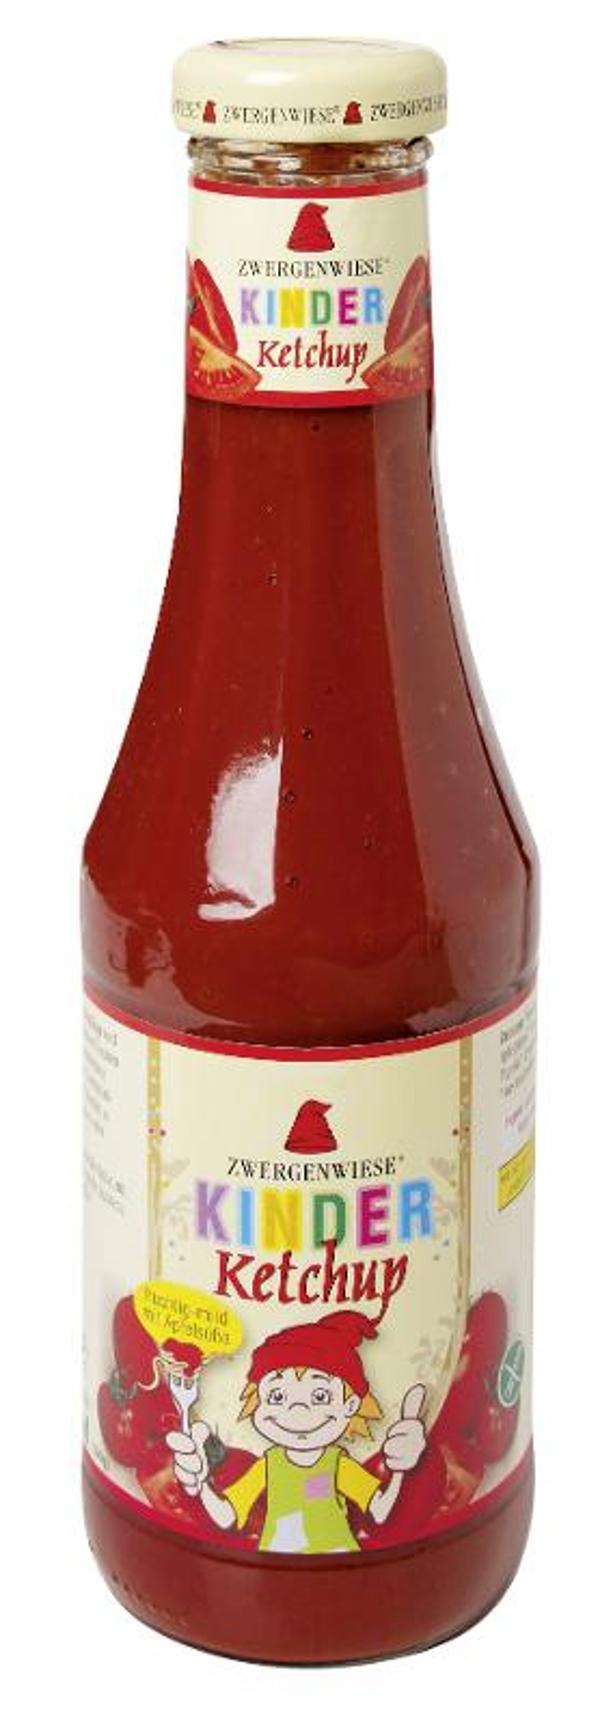 Produktfoto zu Kinder Ketchup ohne Zucker von Zwergenwiese